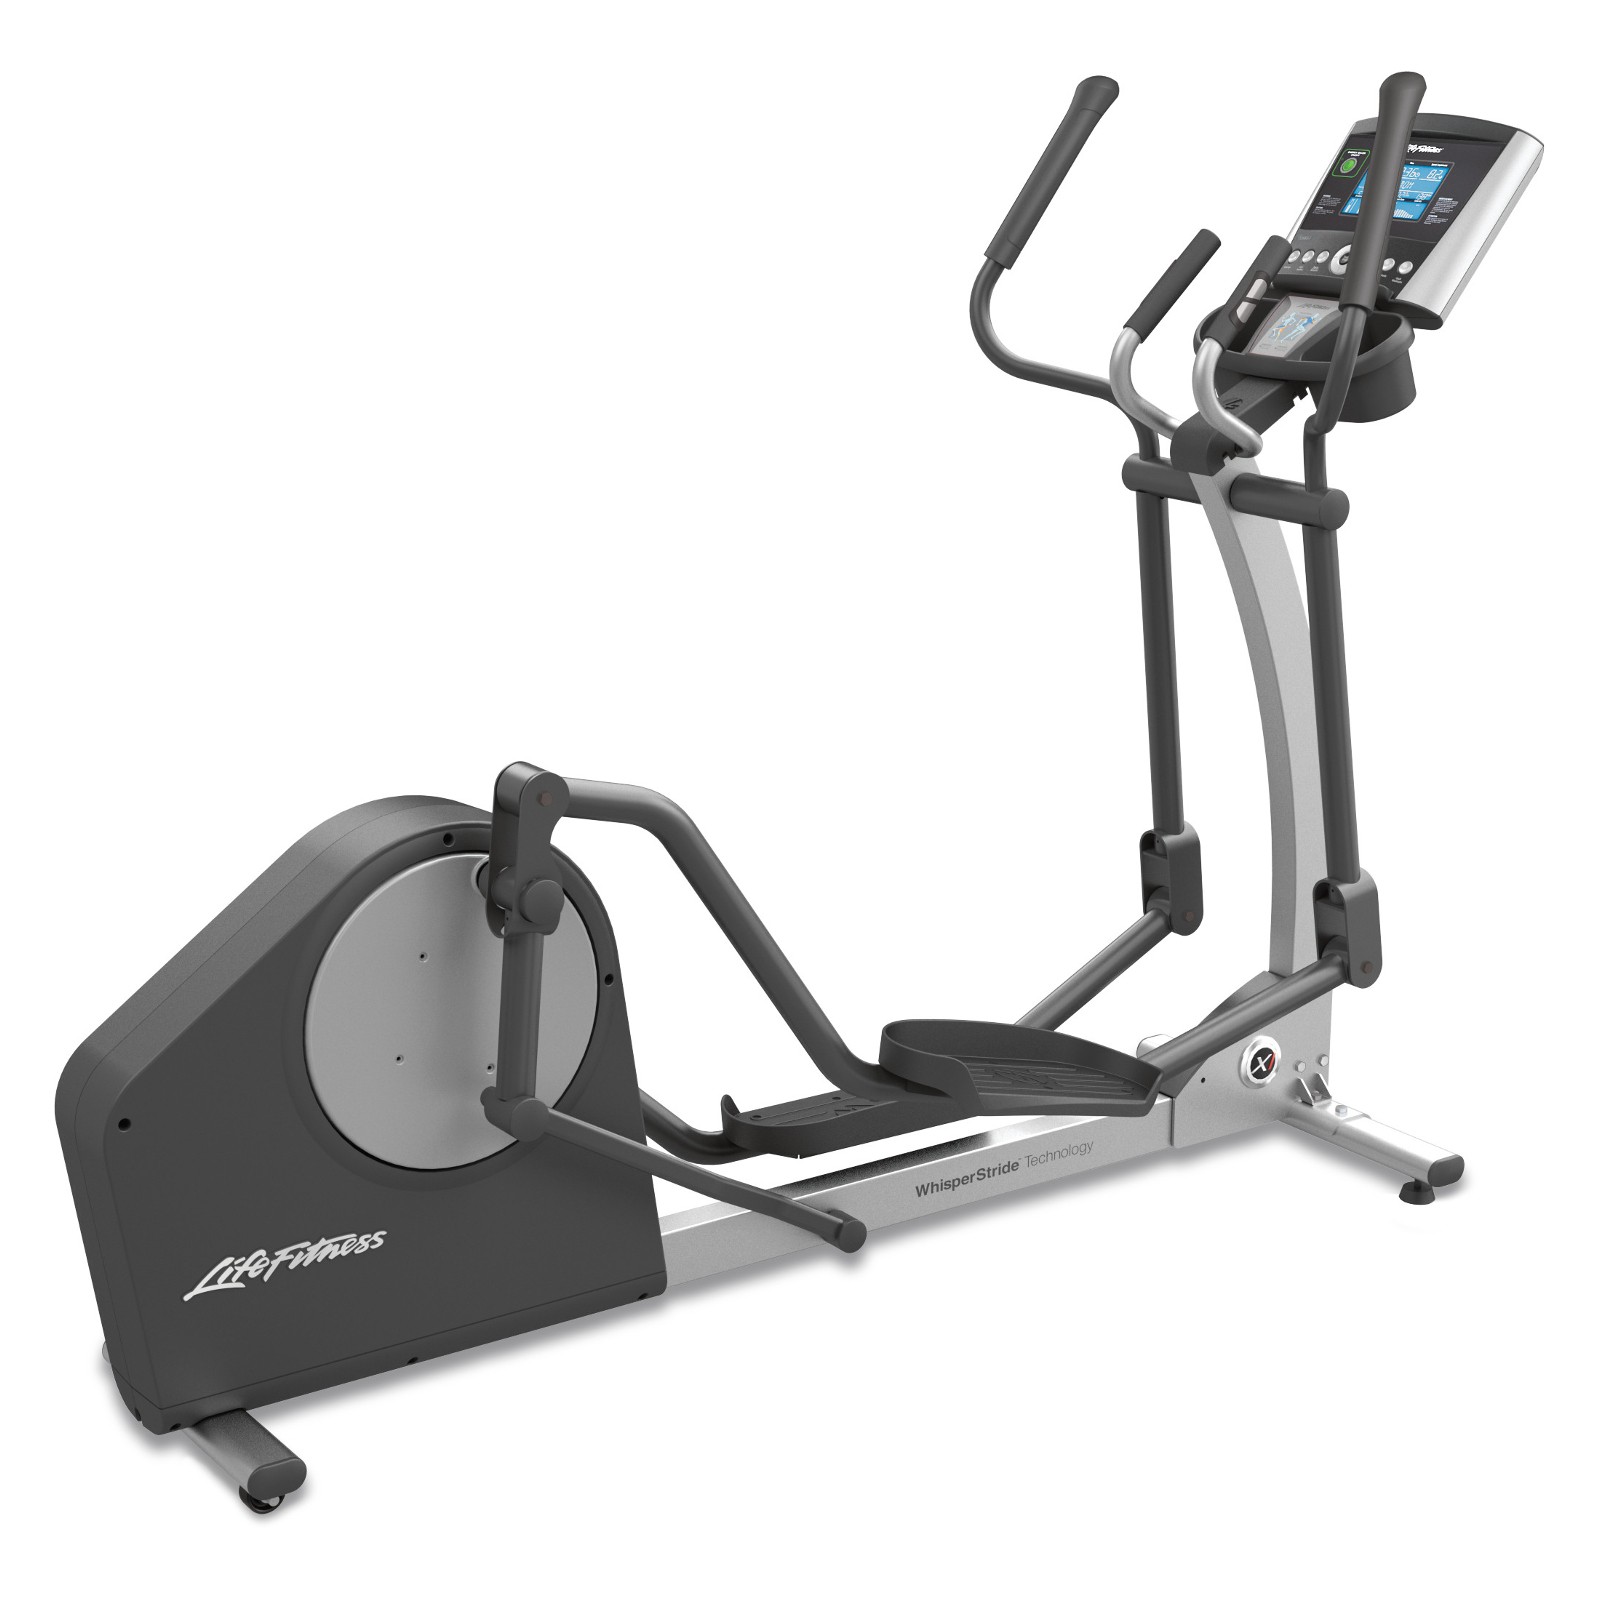 daar ben ik het mee eens Welvarend Moeras Life Fitness elliptical cross trainer X1 Go buy with 504 customer ratings -  Fitshop